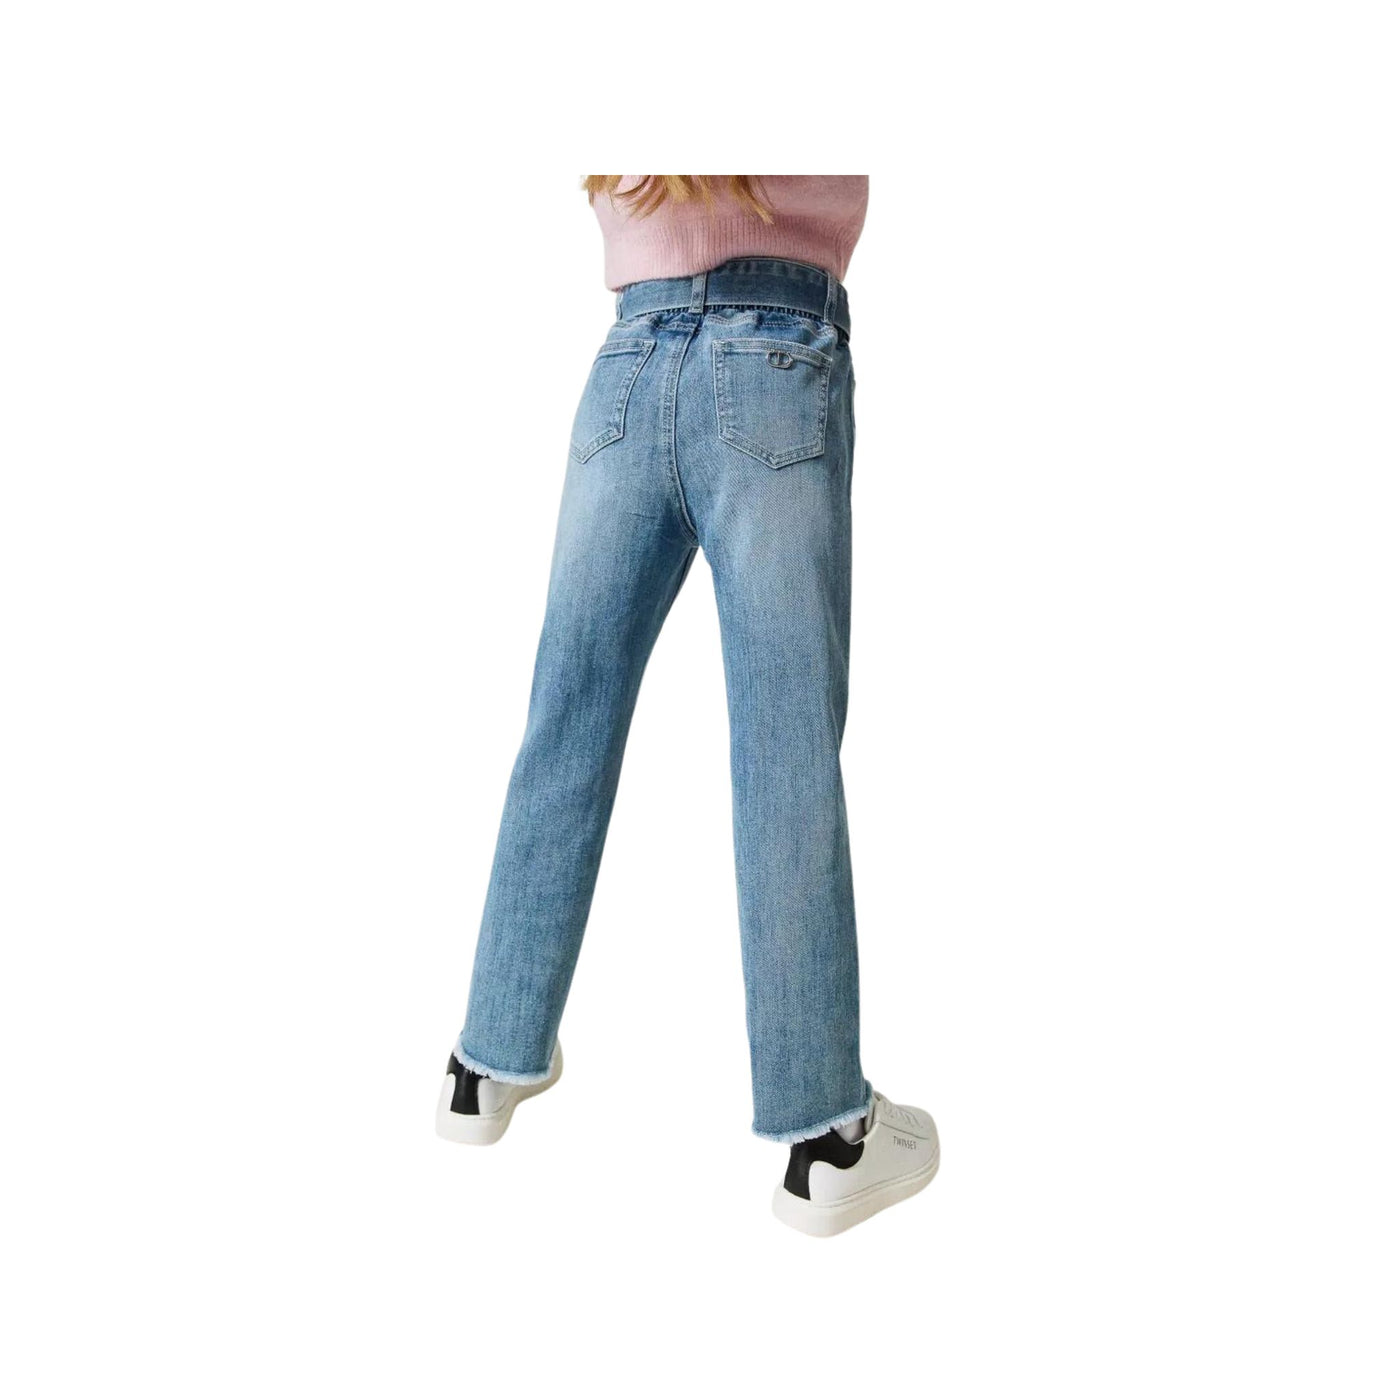 Jeans da bambina denim firmato Twinset vista retro su modella